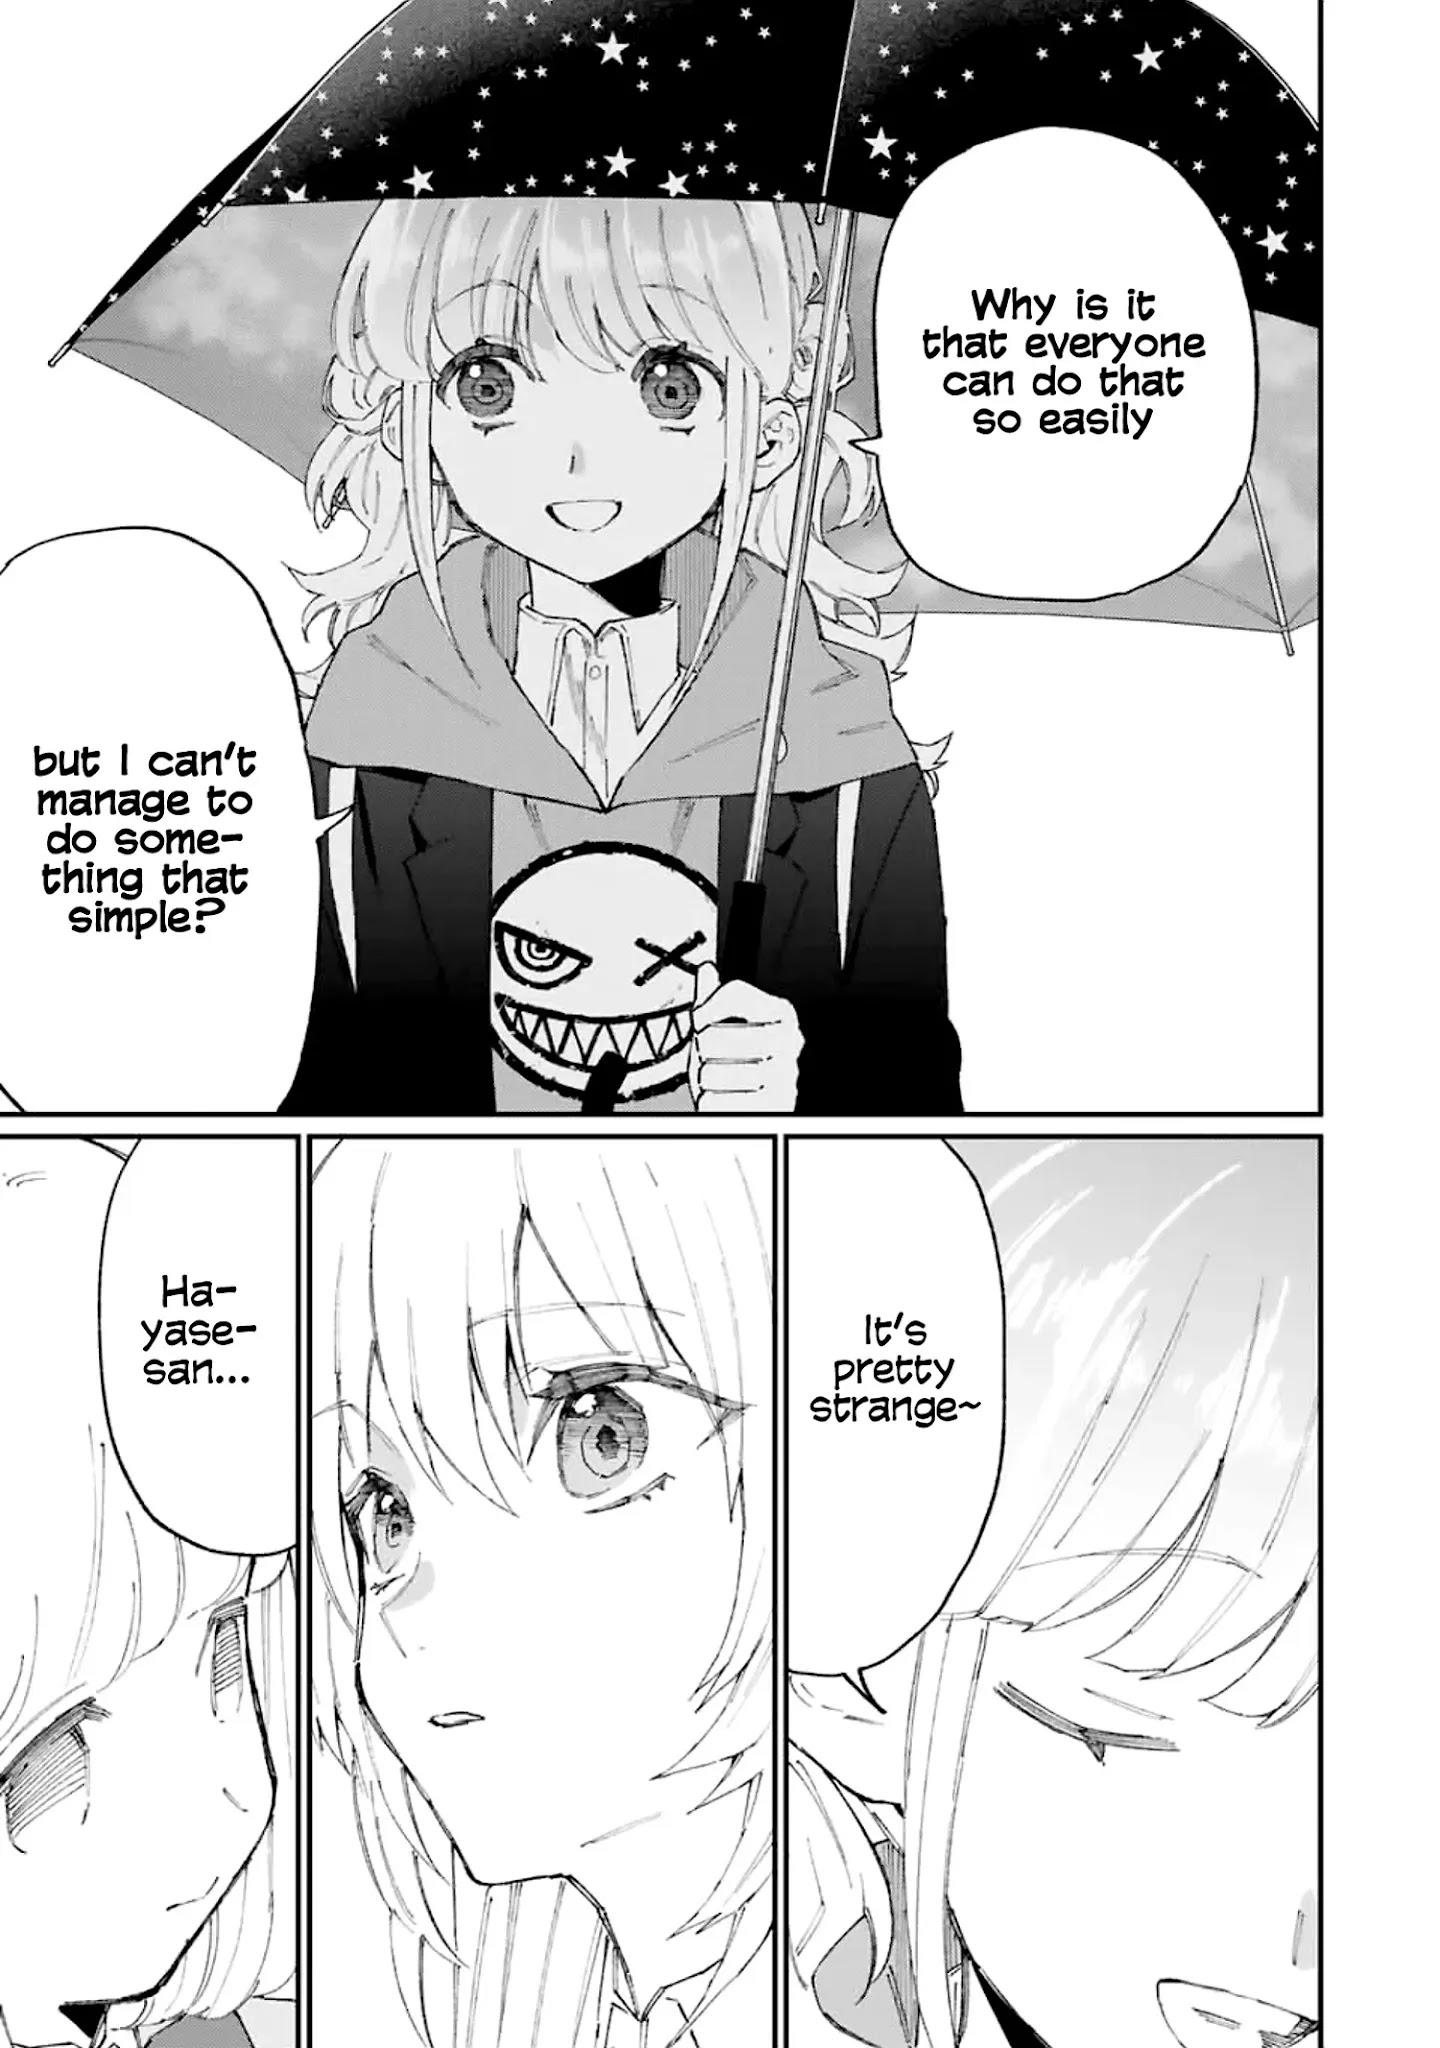 Shikimori's Not Just A Cutie Chapter 124 page 11 - Mangakakalots.com